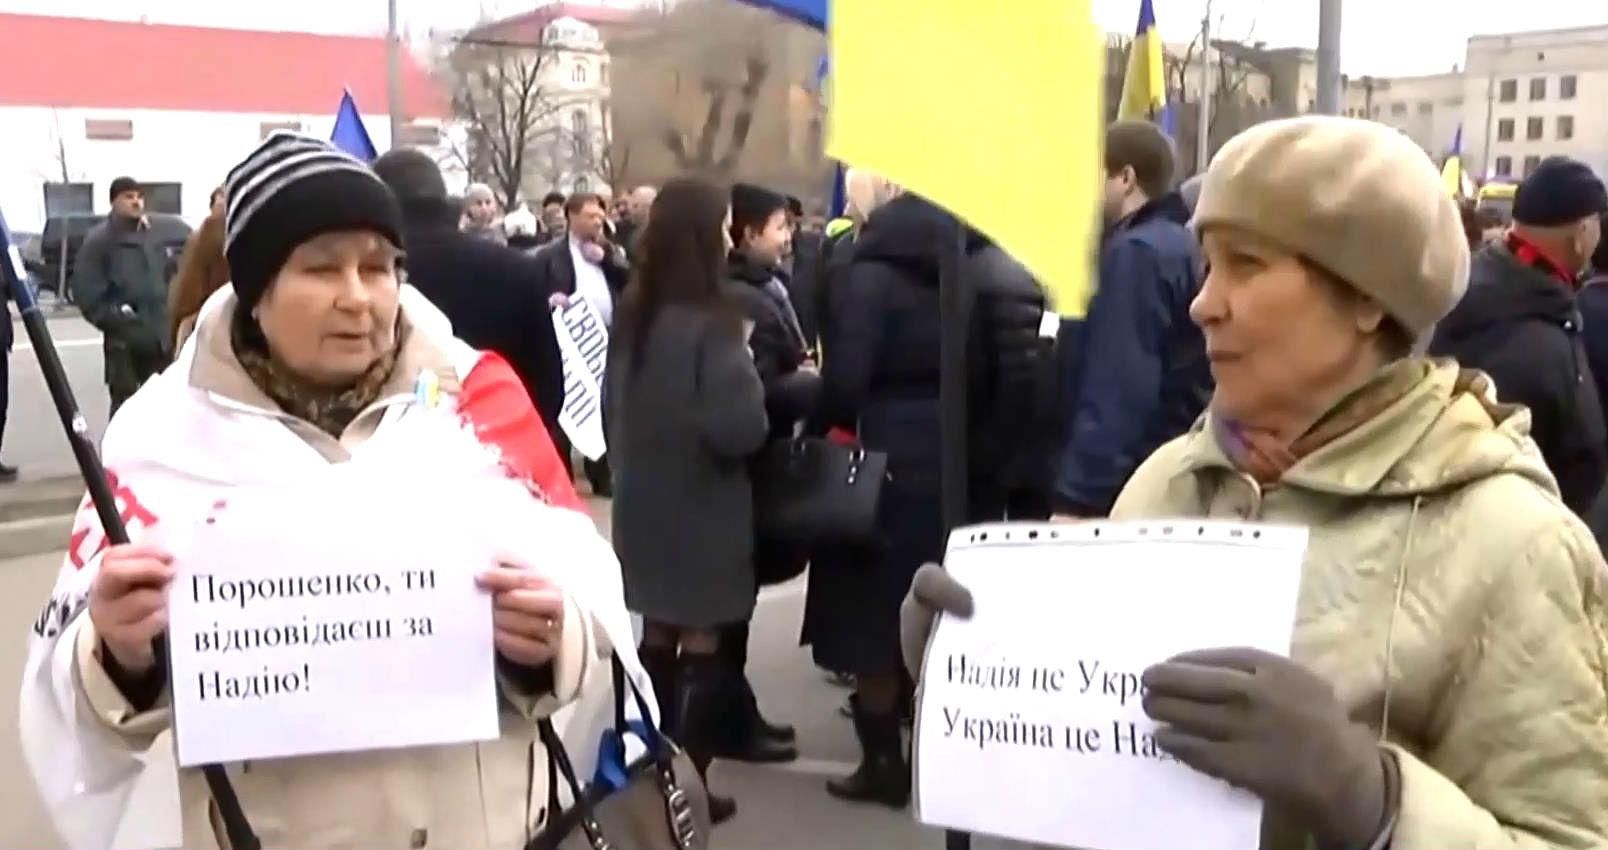 Порошенко, ты отвечаешь за Савченко, — митингующие под российским посольством